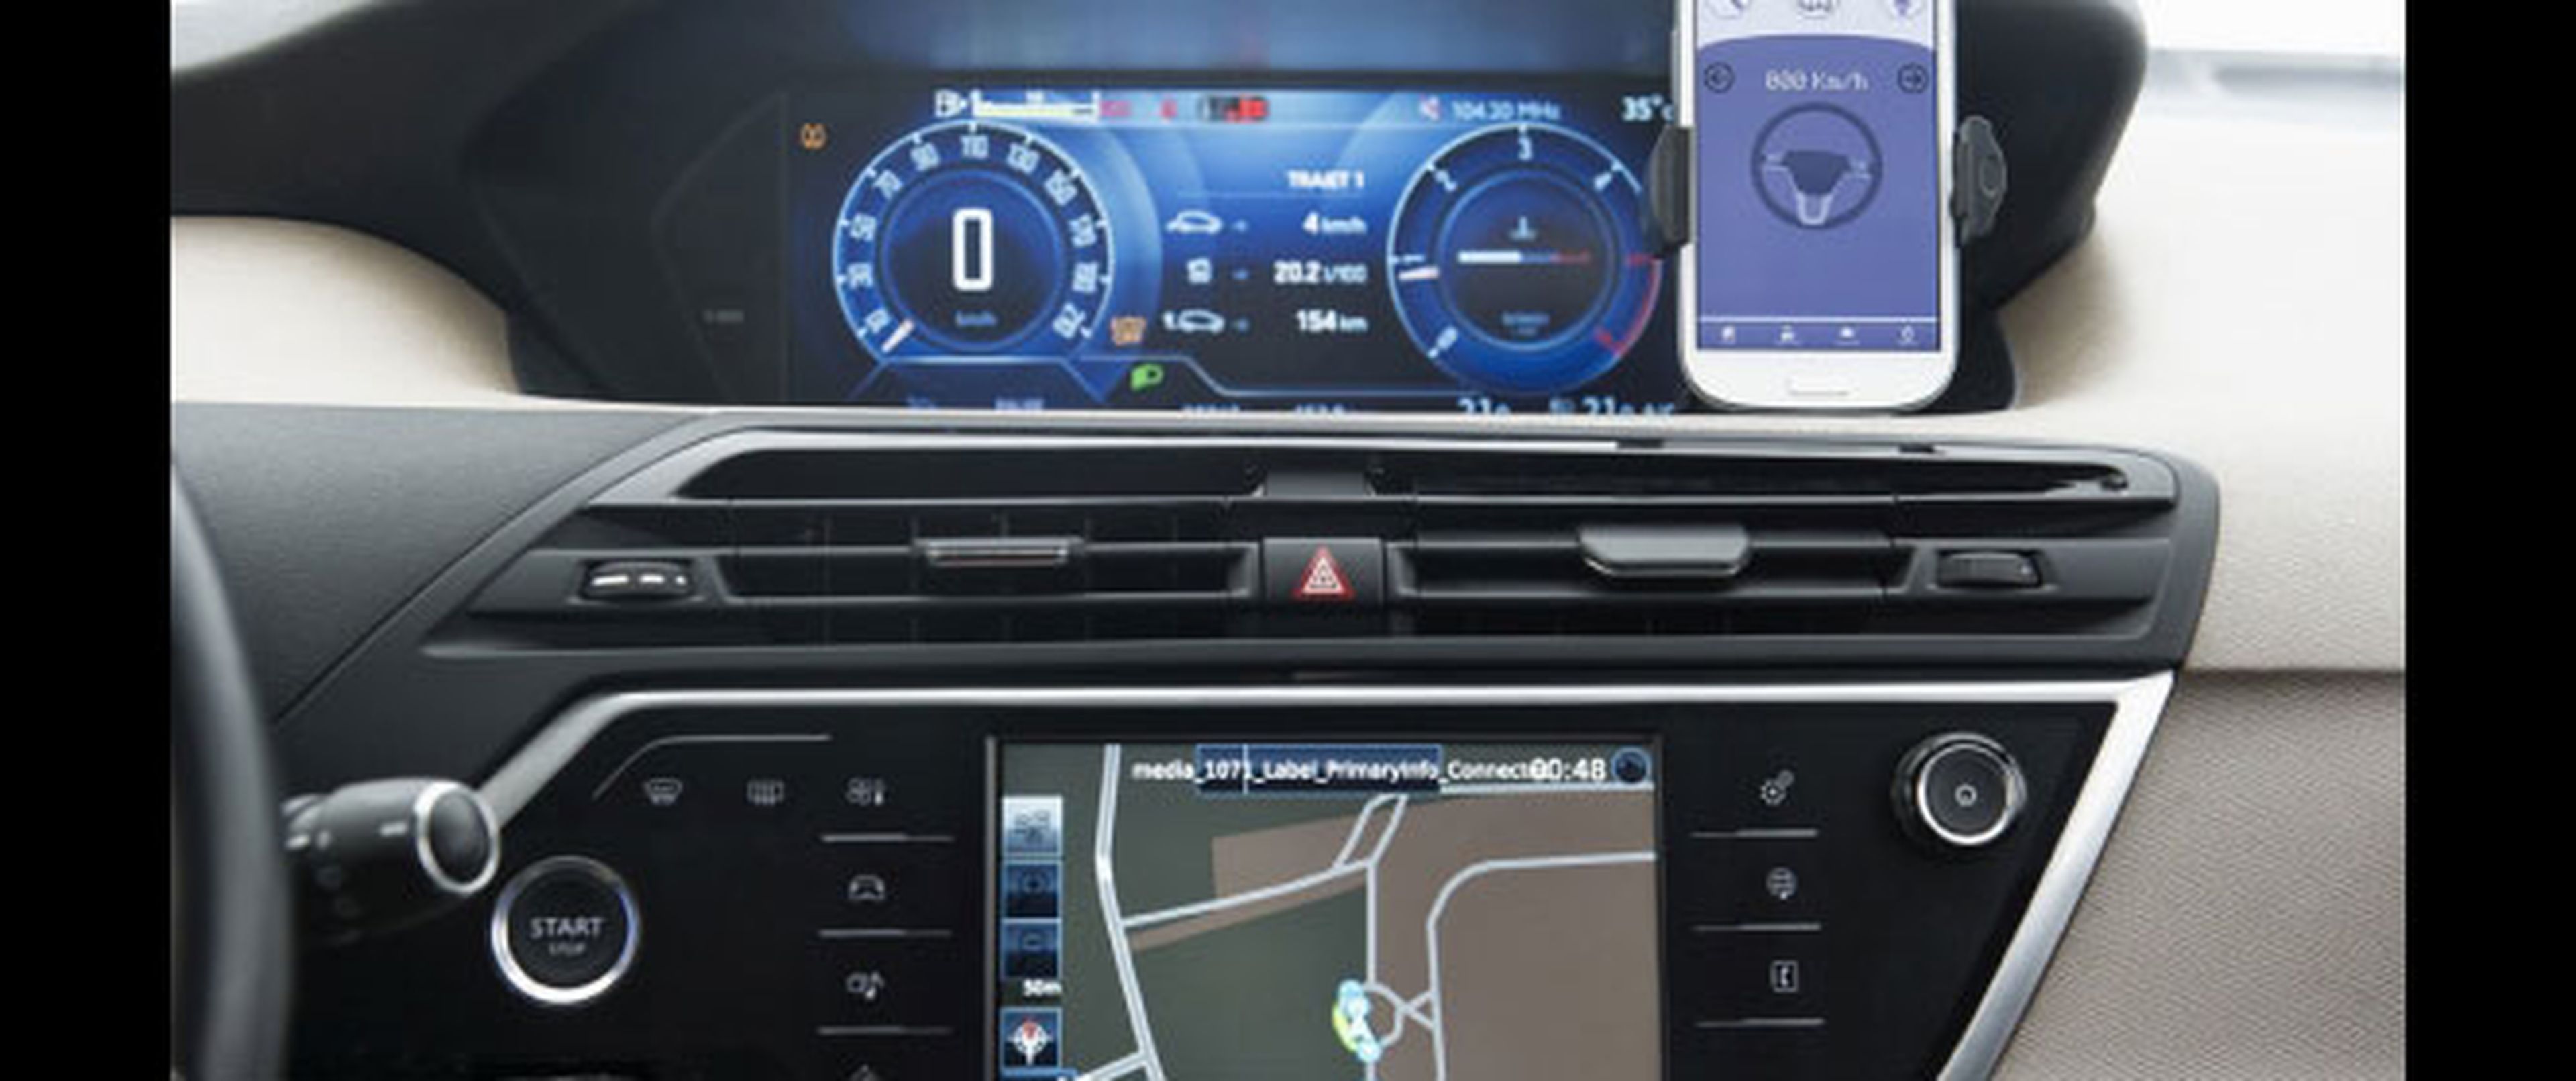 ‘Car Easy Apps’, privacidad y seguridad en el smartphone